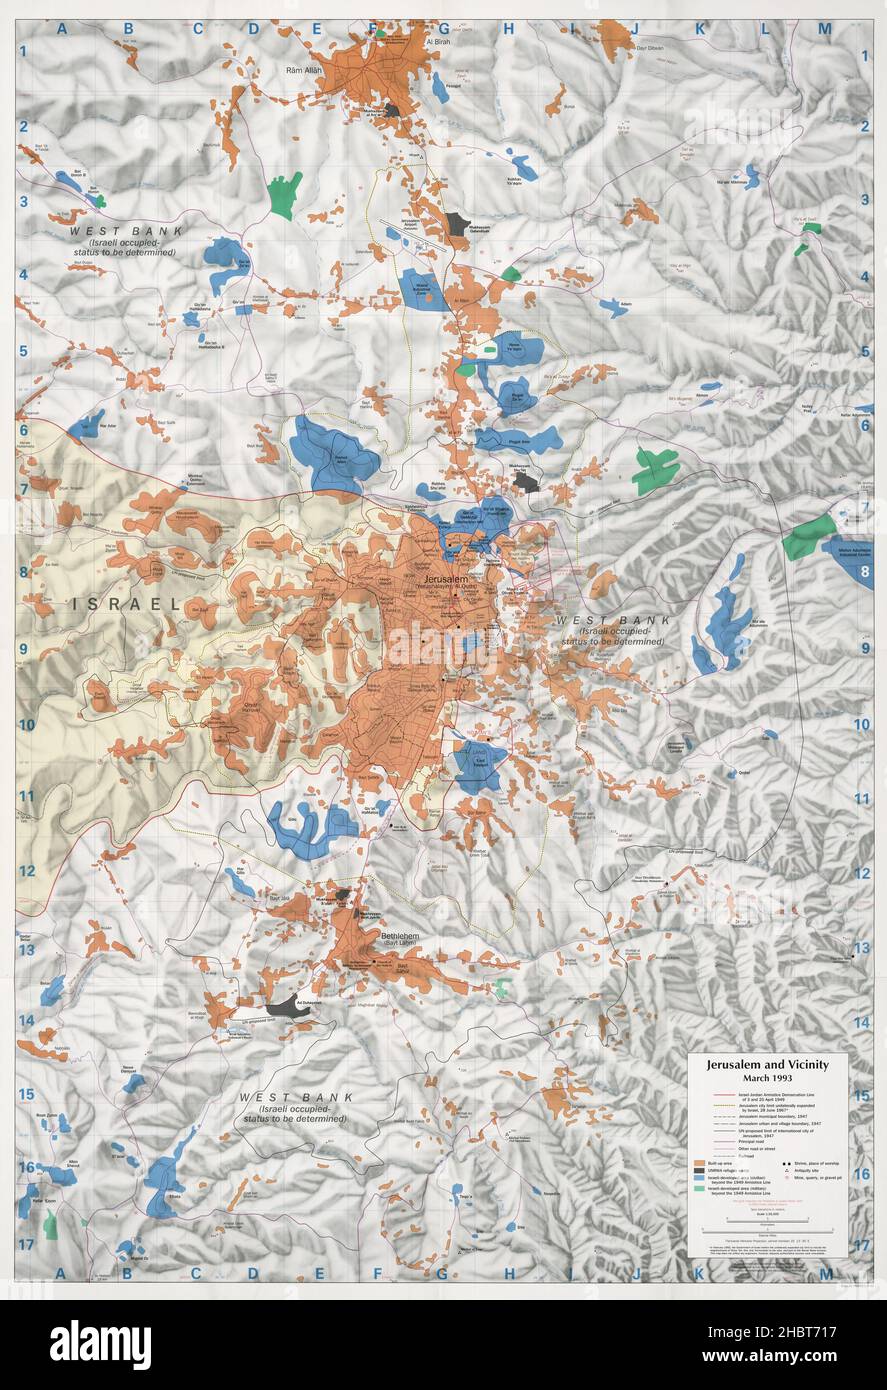 Mappa dettagliata di Gerusalemme e dintorni con insediamenti israeliani, marzo 1993 Foto Stock